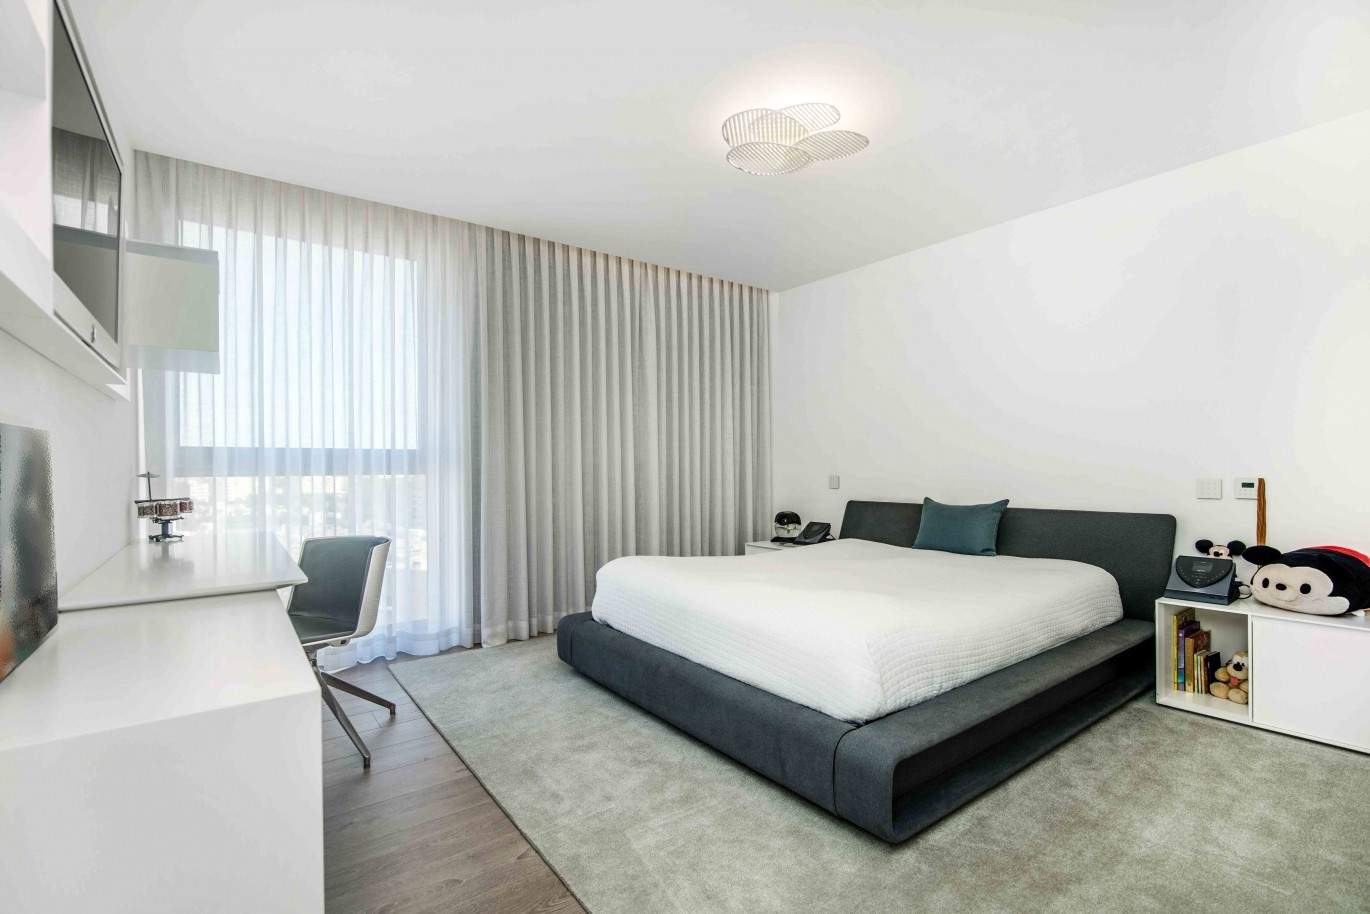 Verkauf Maisonette-Wohnung von Luxus mit Terrasse, Maia,Porto,Portugal_67840